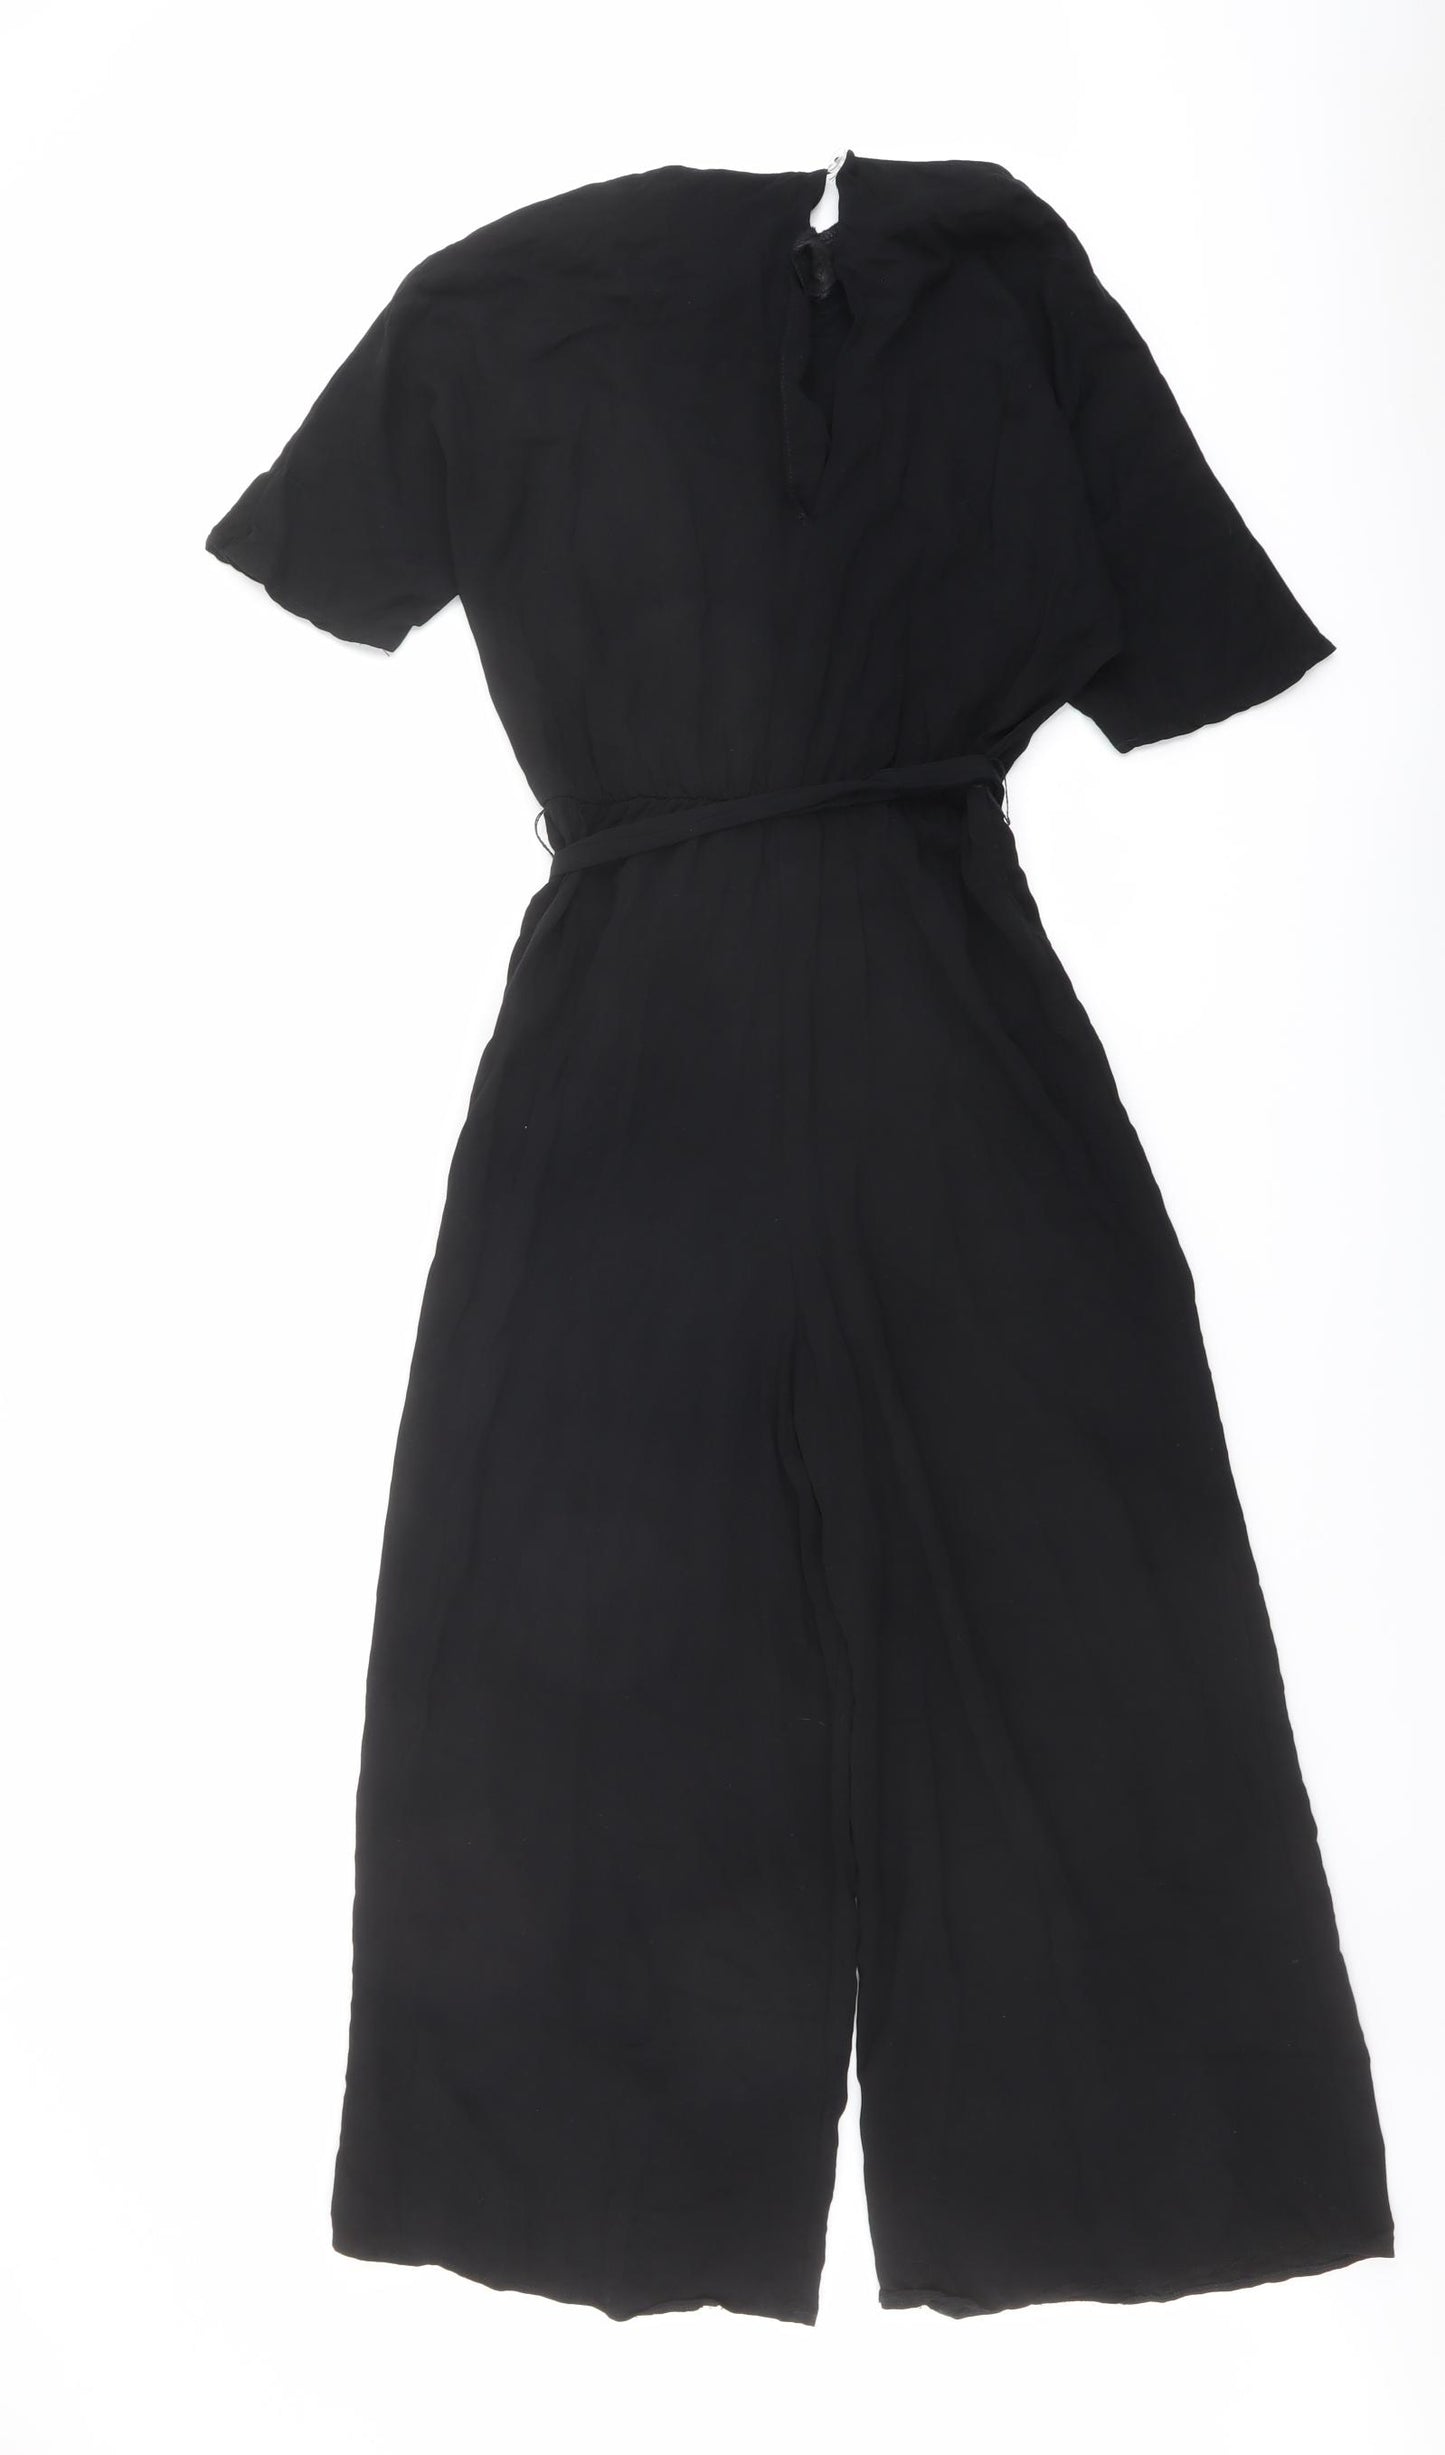 ASOS Womens Black Viscose Jumpsuit One-Piece Size 8 Button